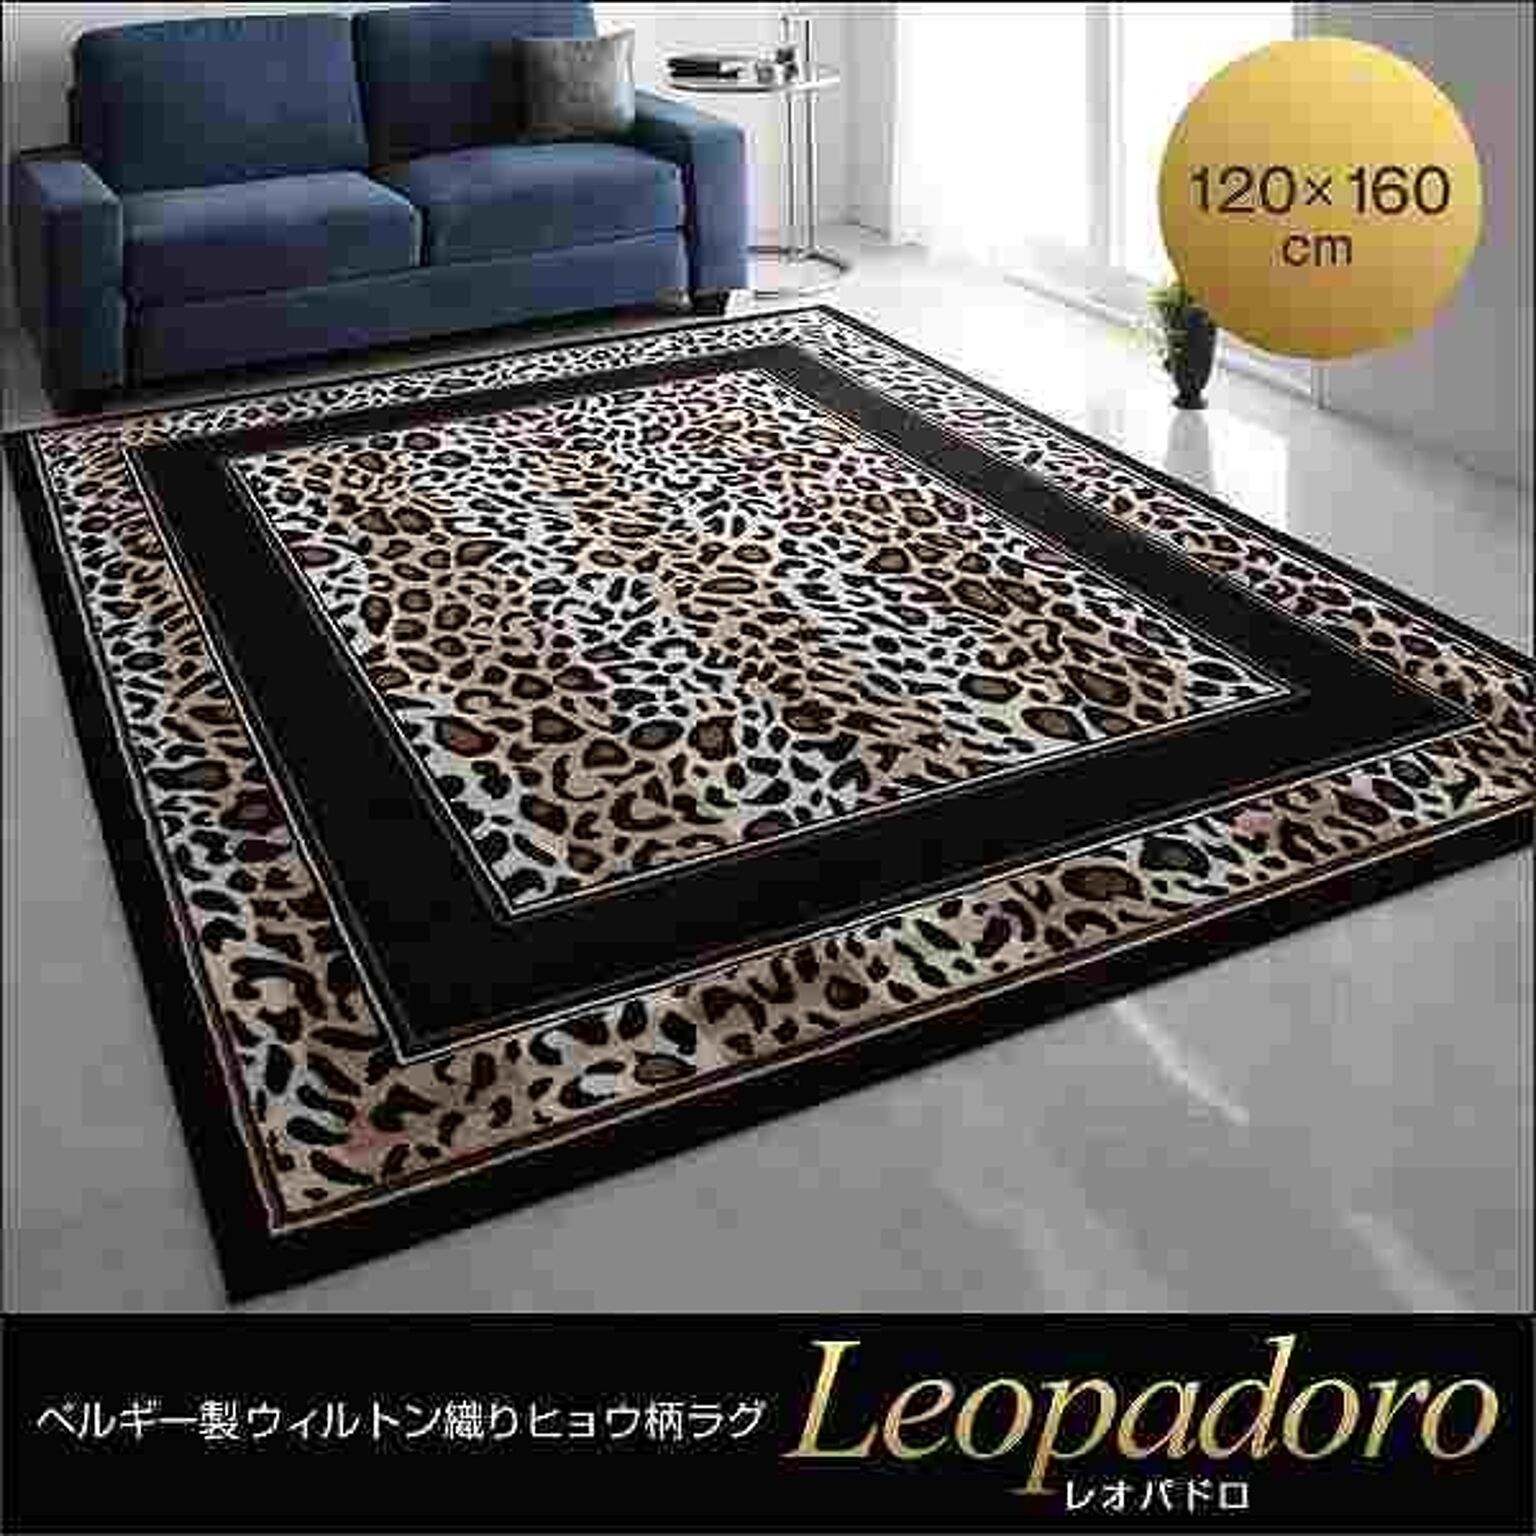 ベルギー製ウィルトン織りヒョウ柄ラグ【Leopadoro】レオパドロ★120×160cm